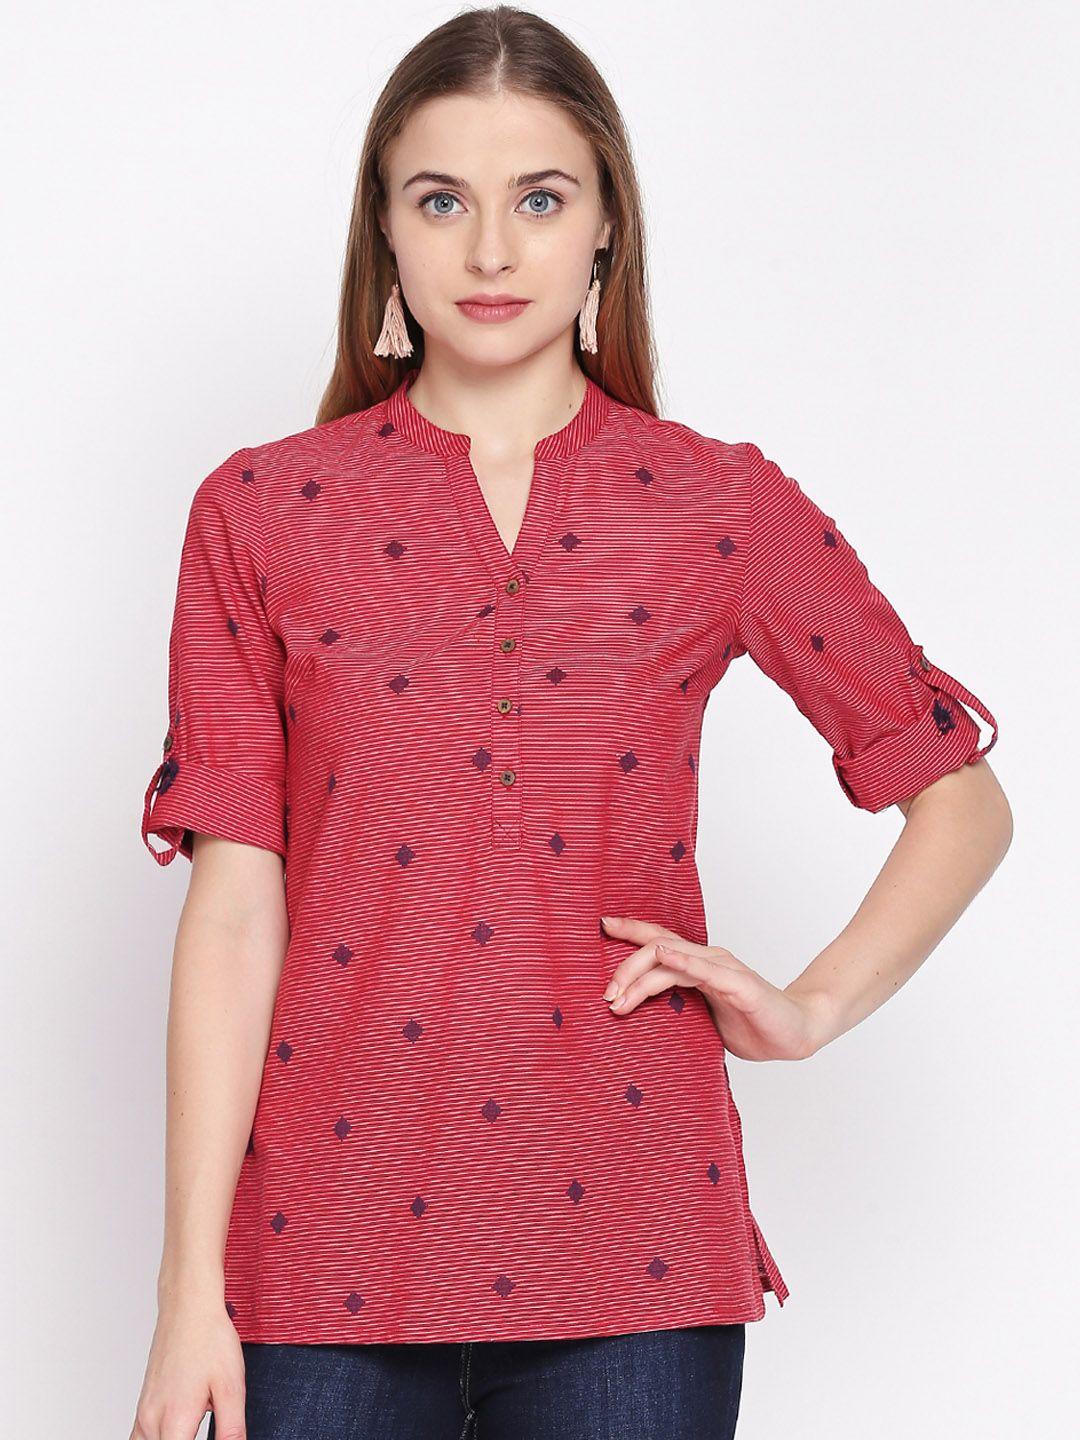 akkriti-by-pantaloons-women-red-&-off-white-self-design-tunic